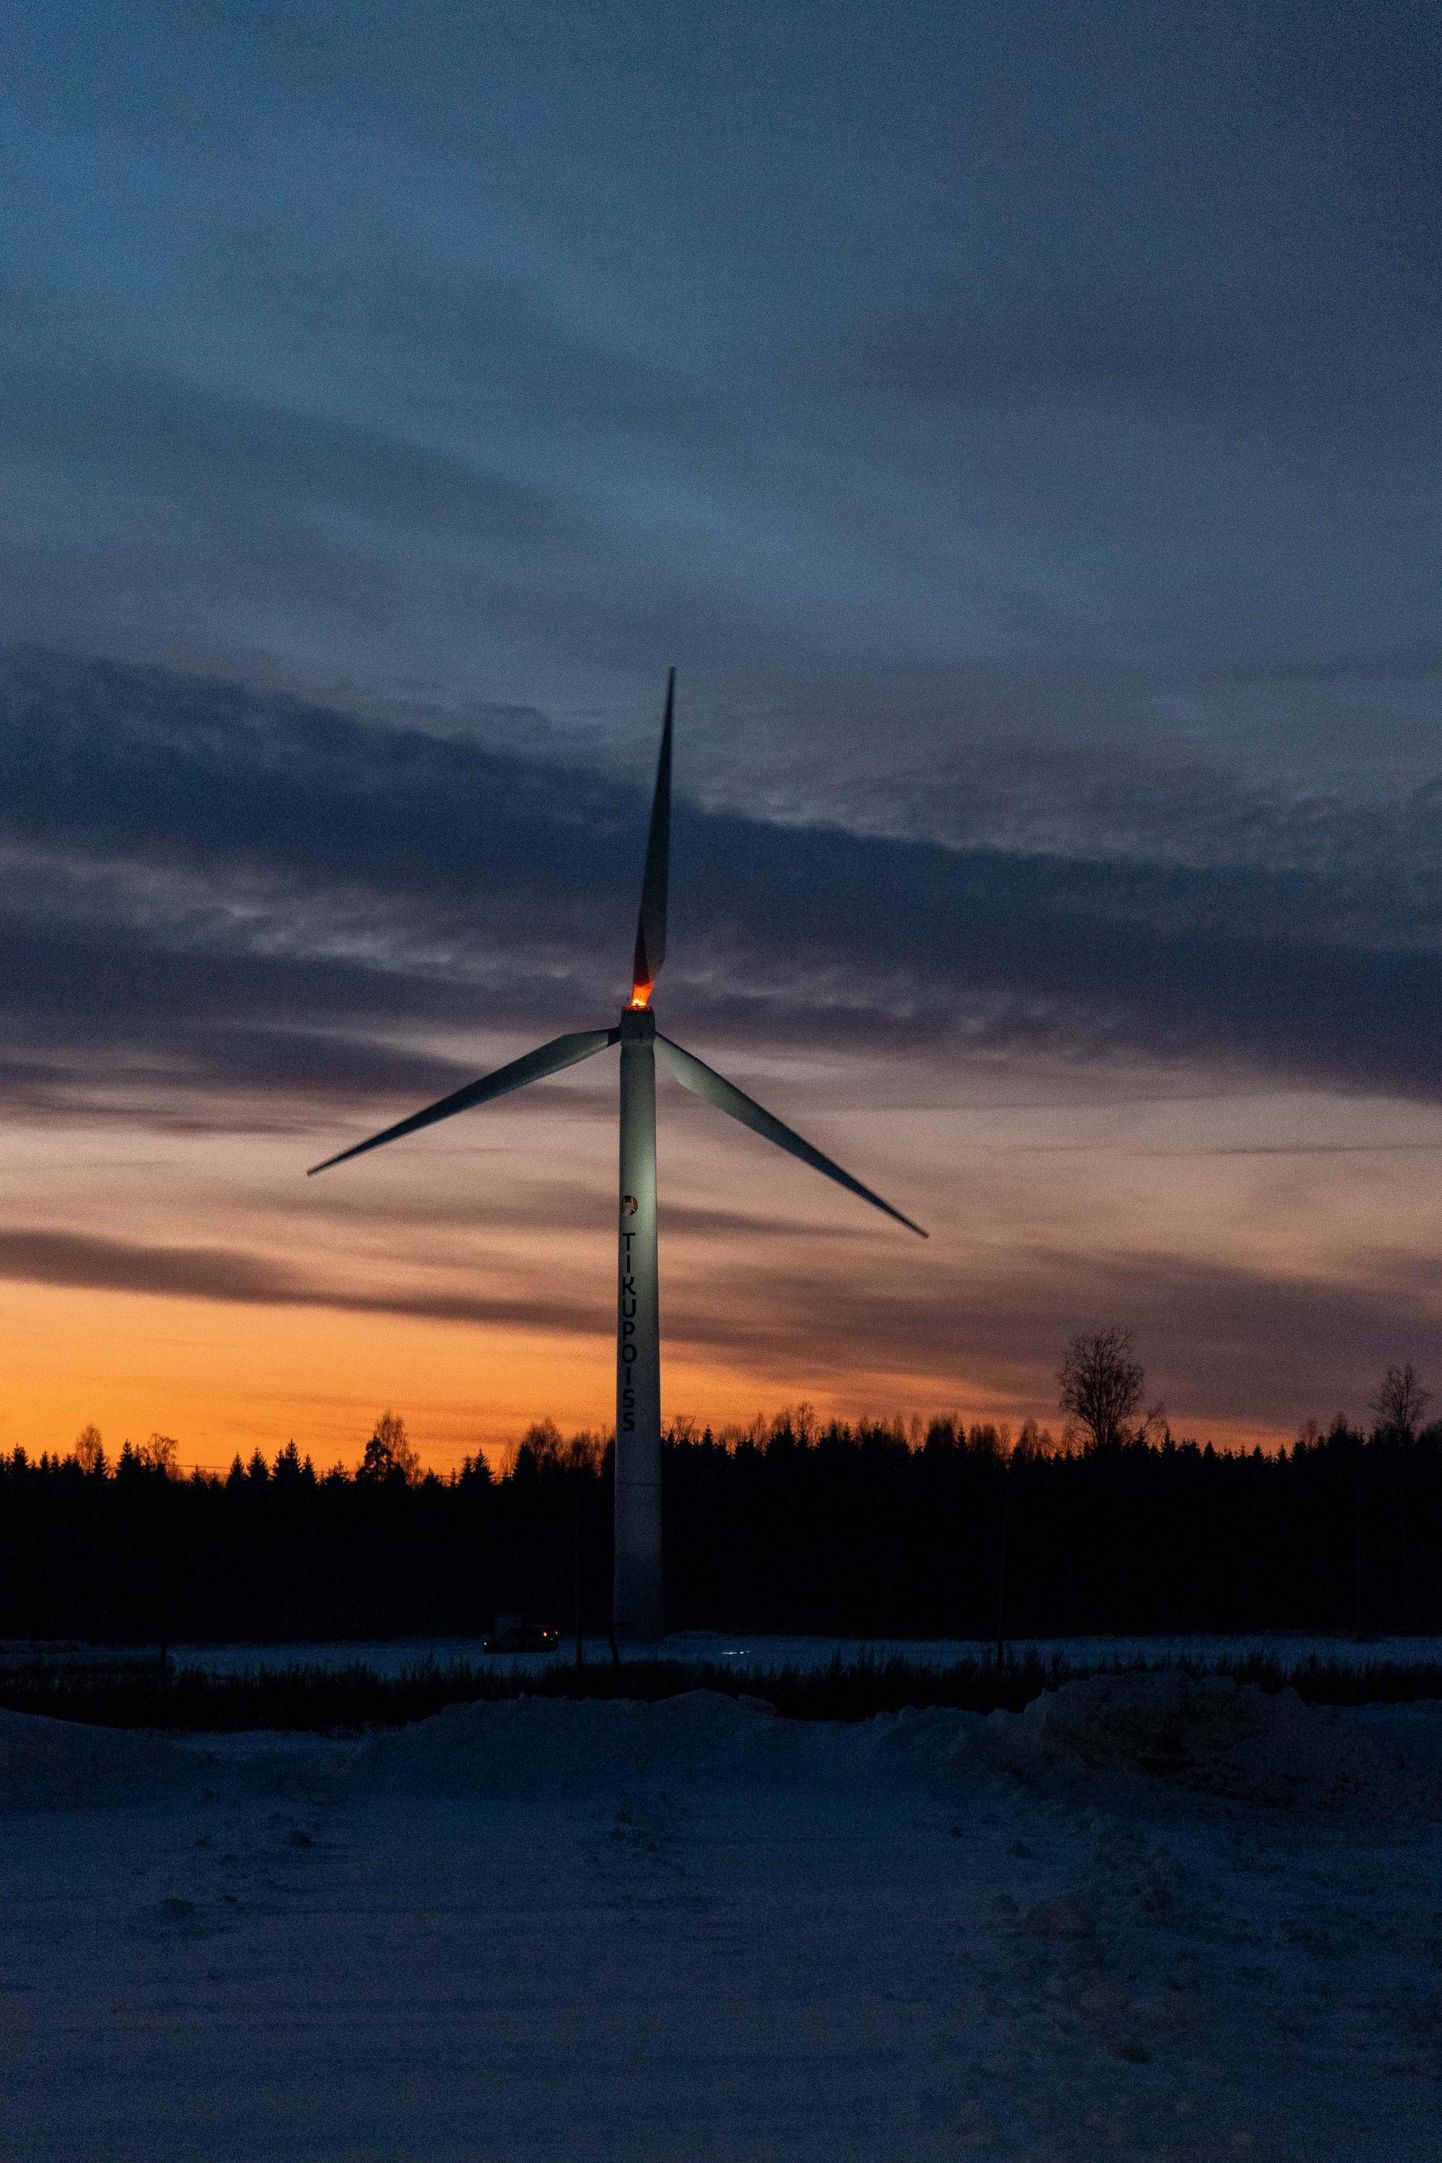 Maismaa tuuleparkidele antakse kaks aastat aega tehnoloogia võrku liitmiseks. Pildil vähem kui kuu aega tagasi avatud Alexela tuulik Tallinna-Tartu maantee ääres.